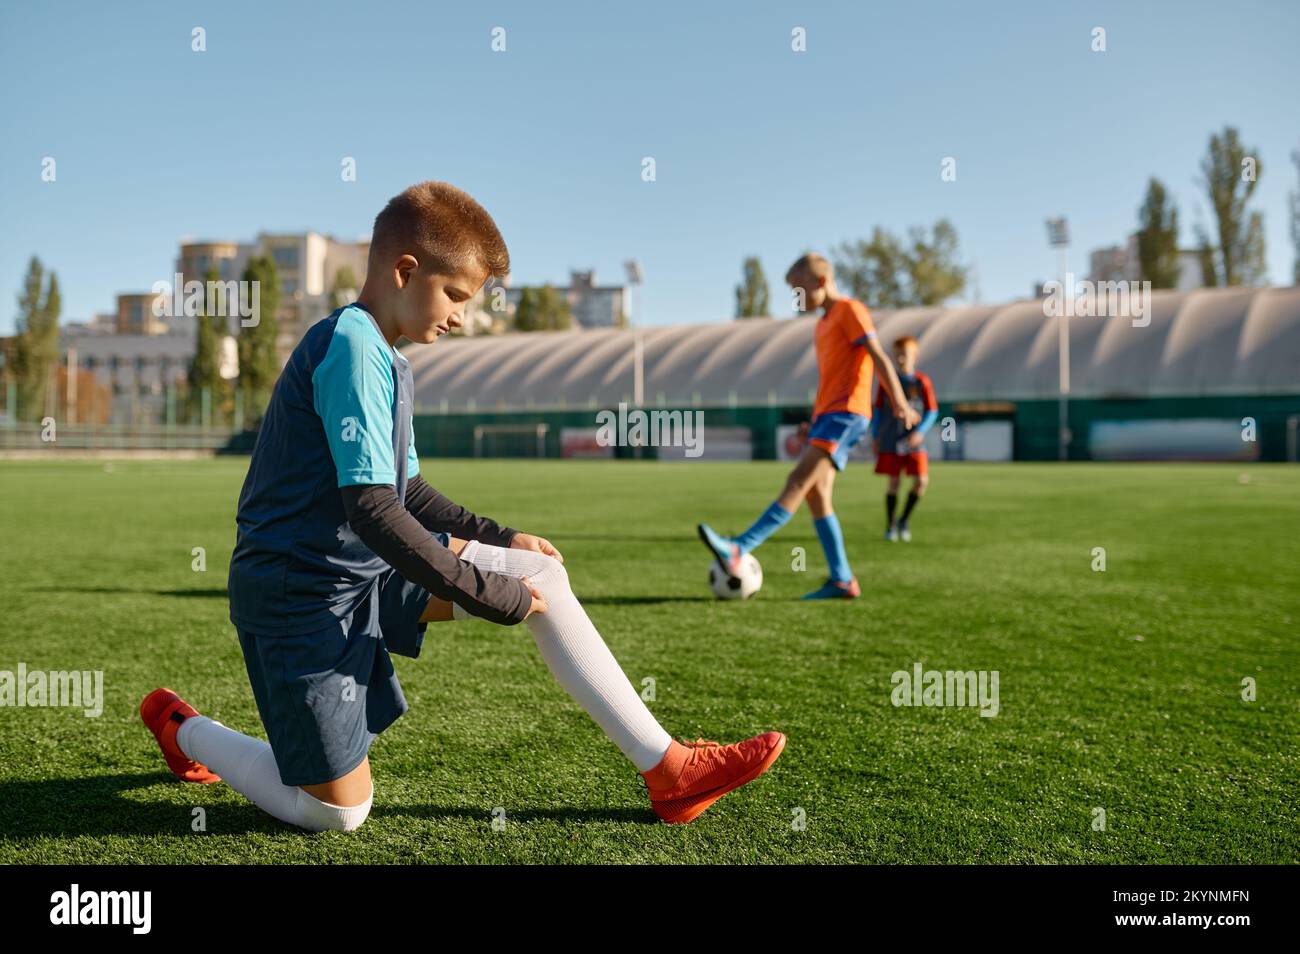 Aktive Kinder spielen Fußball auf einem grünen Sportplatz im Freien Stockfoto